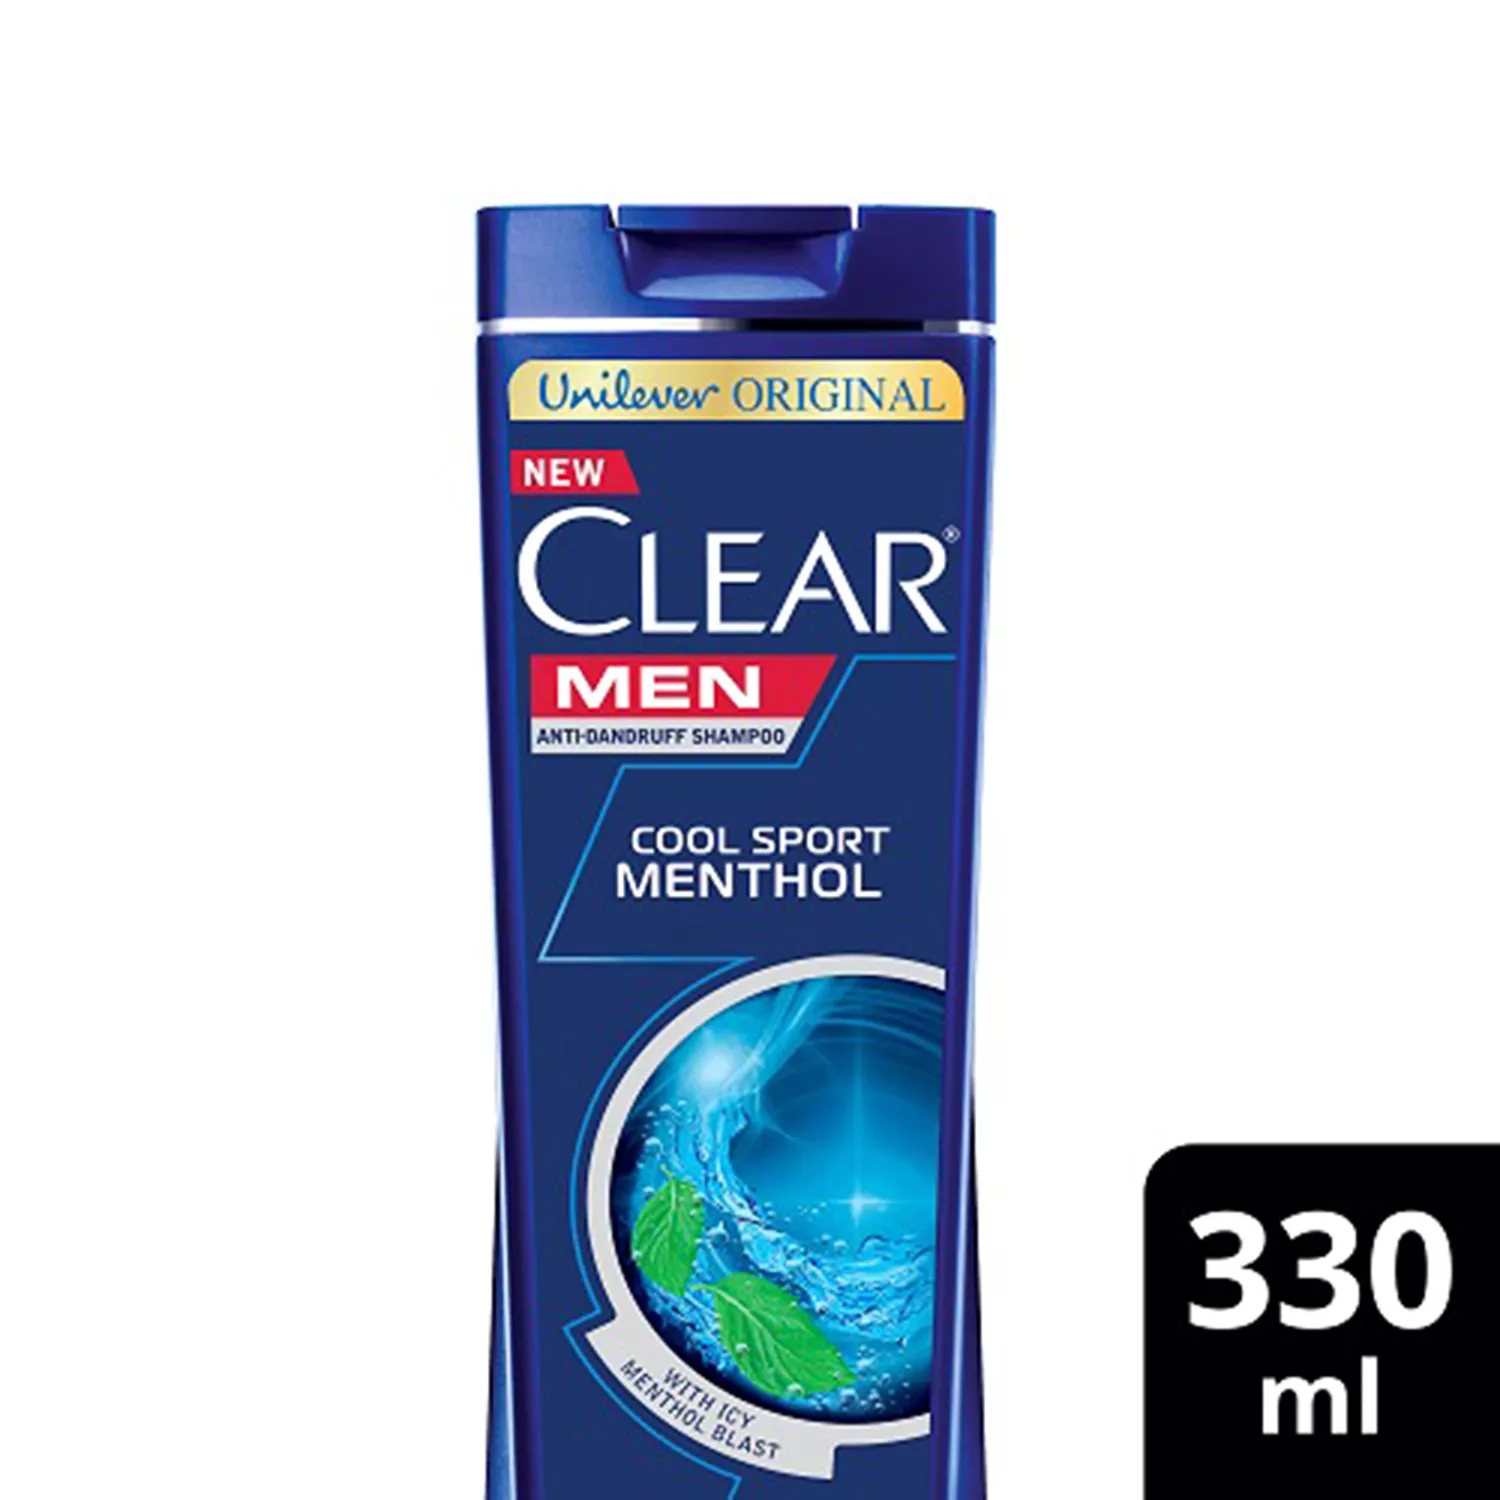 Shampoo CLEAR MEN -330ml